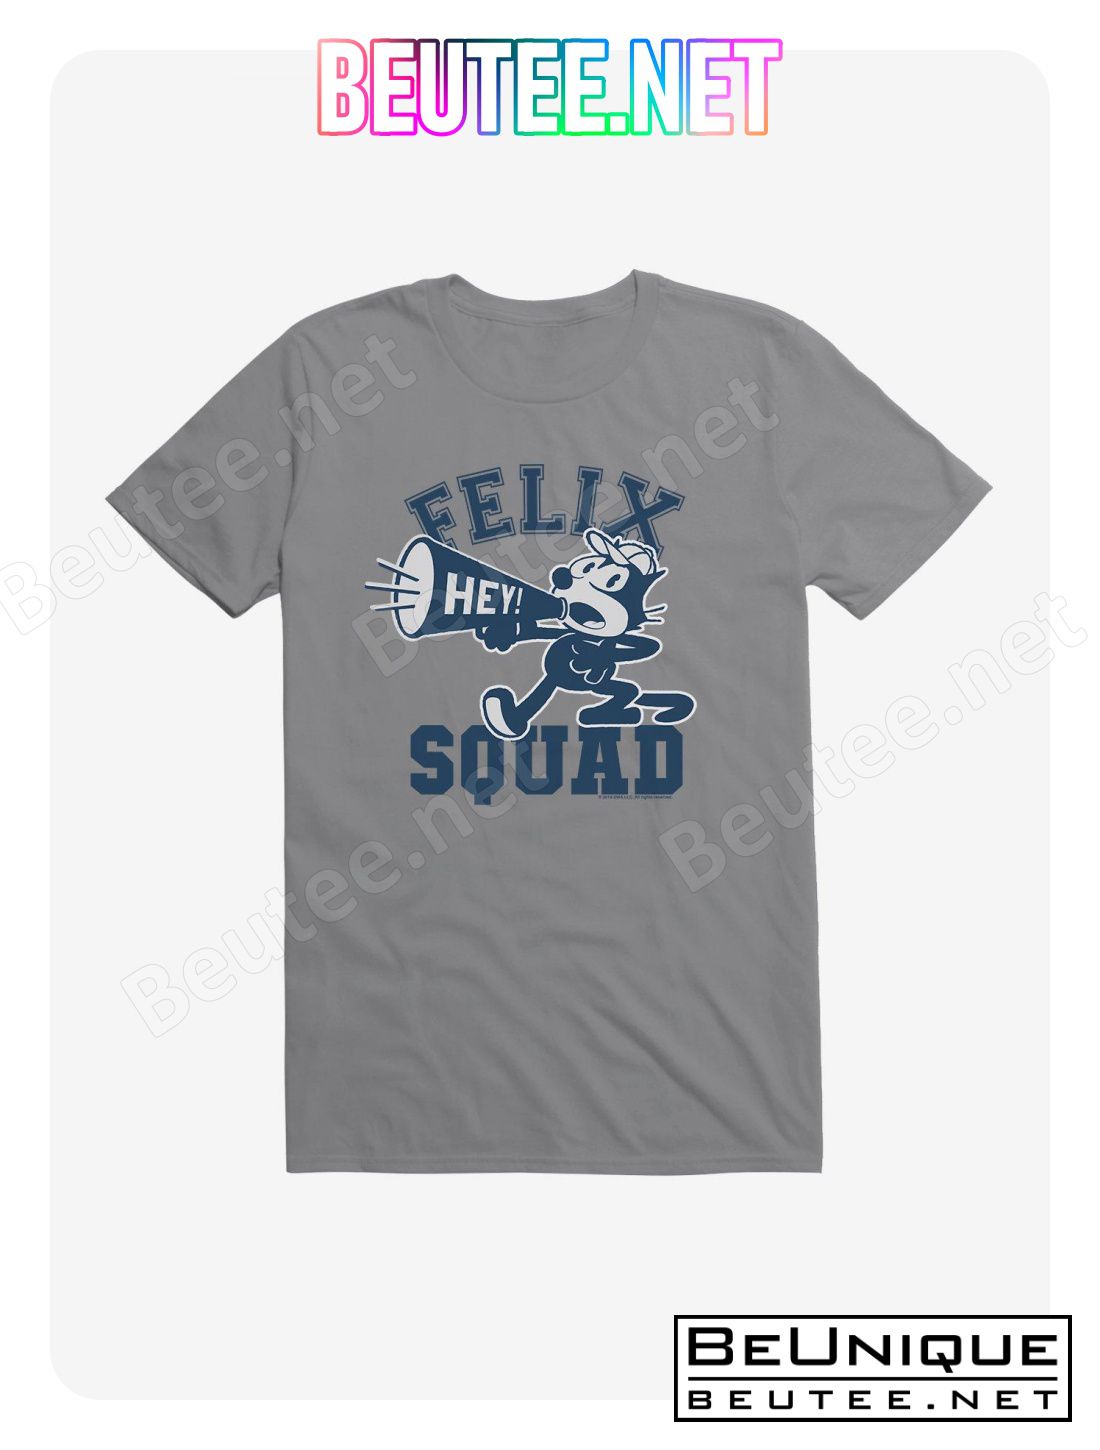 Felix The Cat Hey Squad T-Shirt